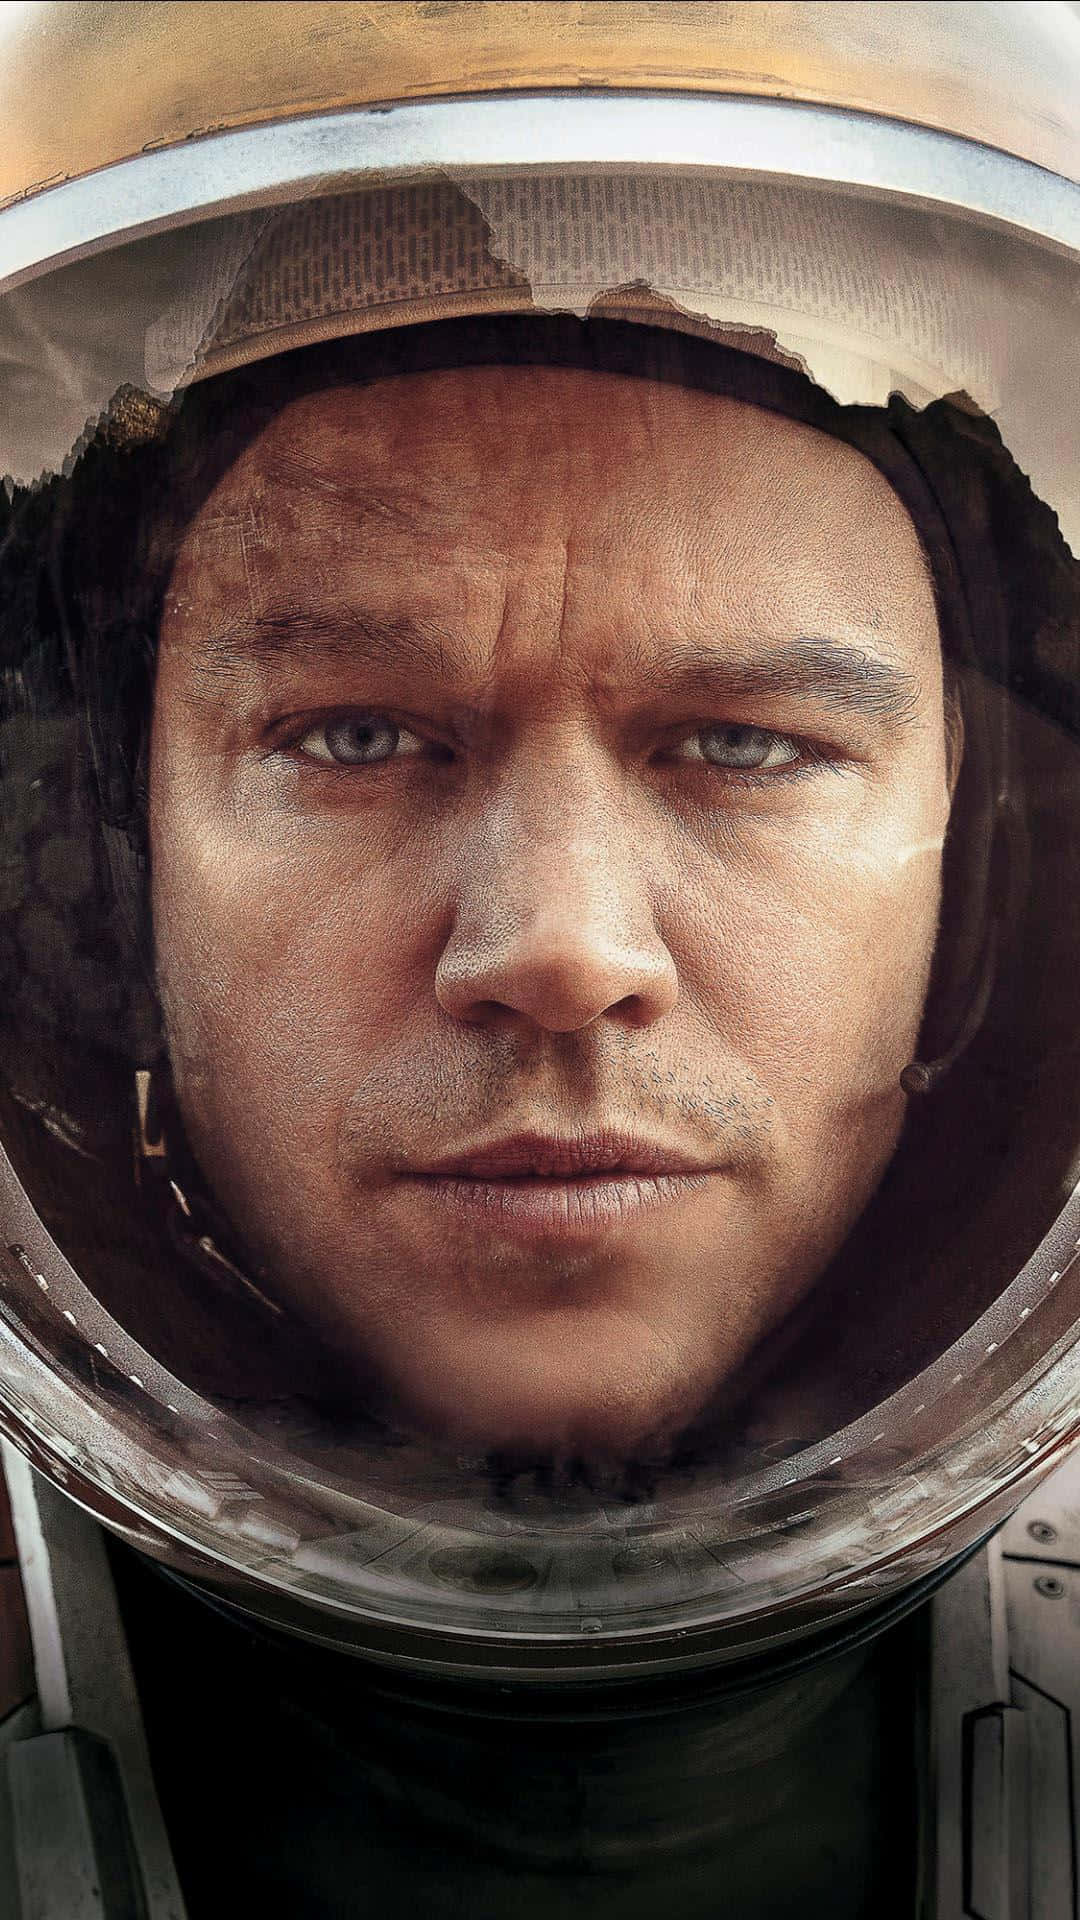 Astronaut Mark Watney (matt Damon) On The Vast Martian Surface